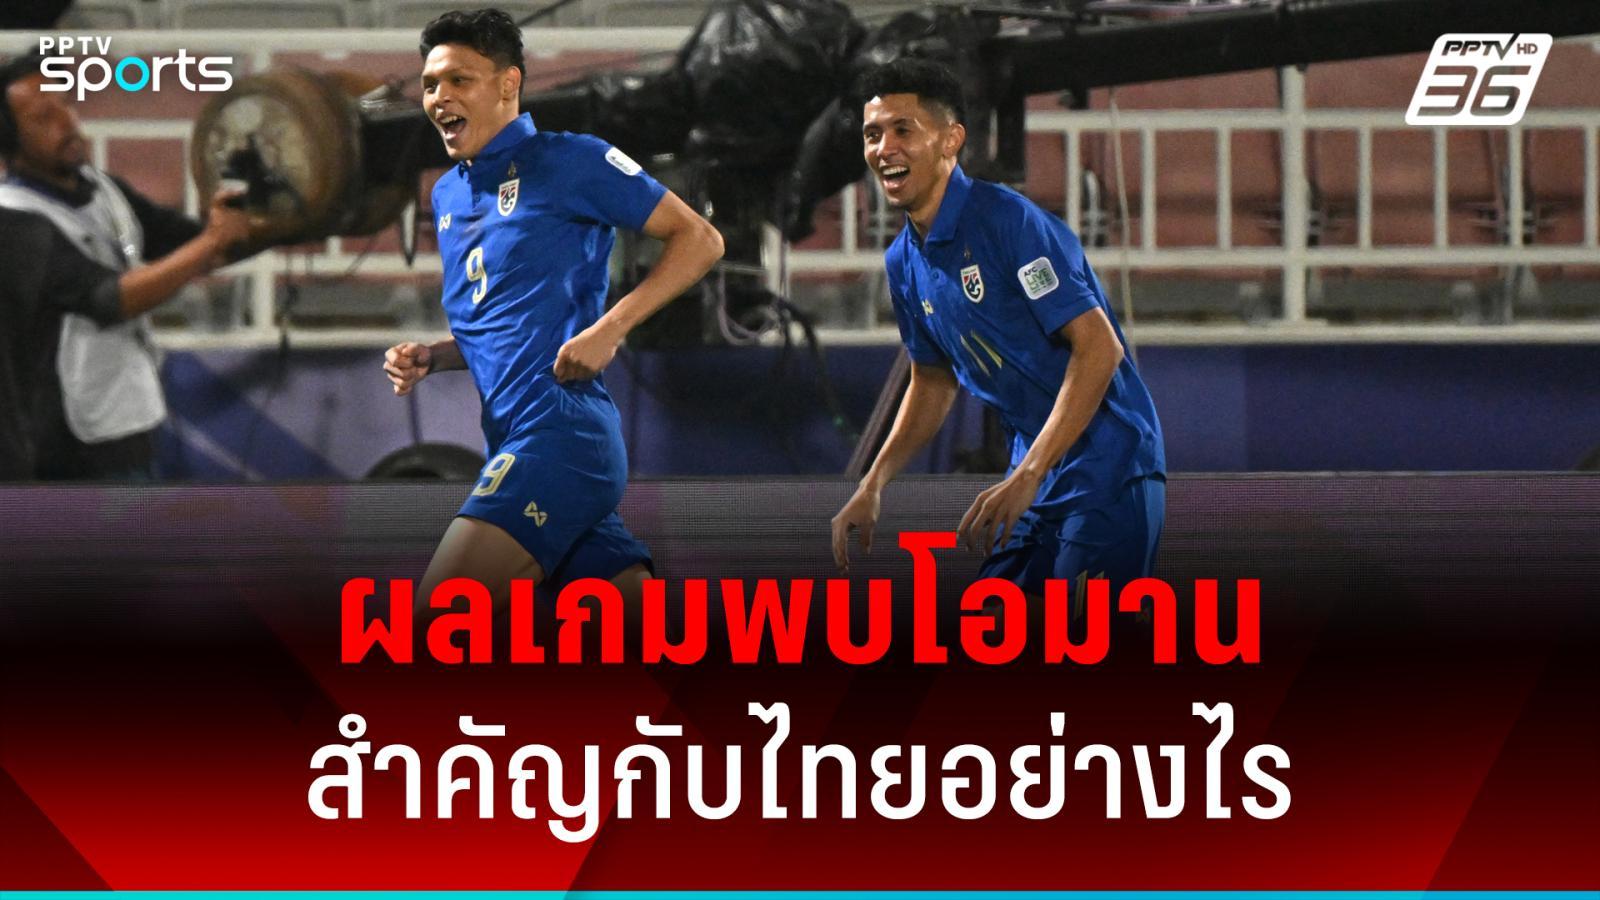 ผลนัดทีมชาติไทย พบ โอมาน สำคัญต่อโอกาสการเข้ารอบมากแค่ไหน